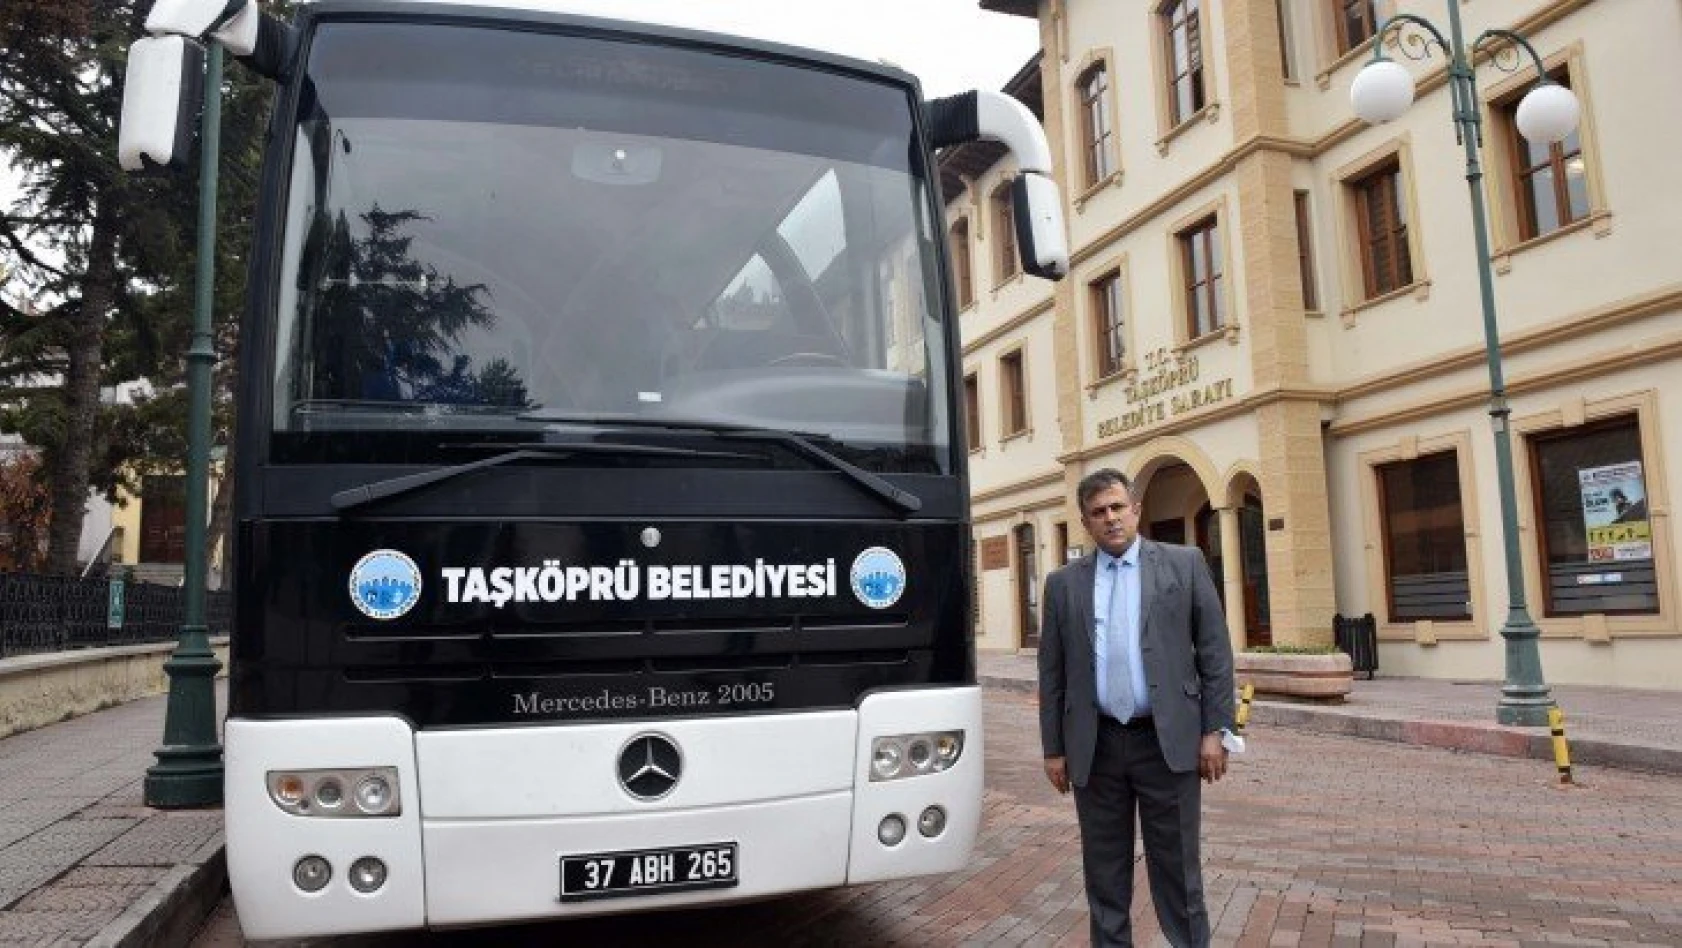 Taşköprü Belediyesine 46 kişilik otobüs alındı